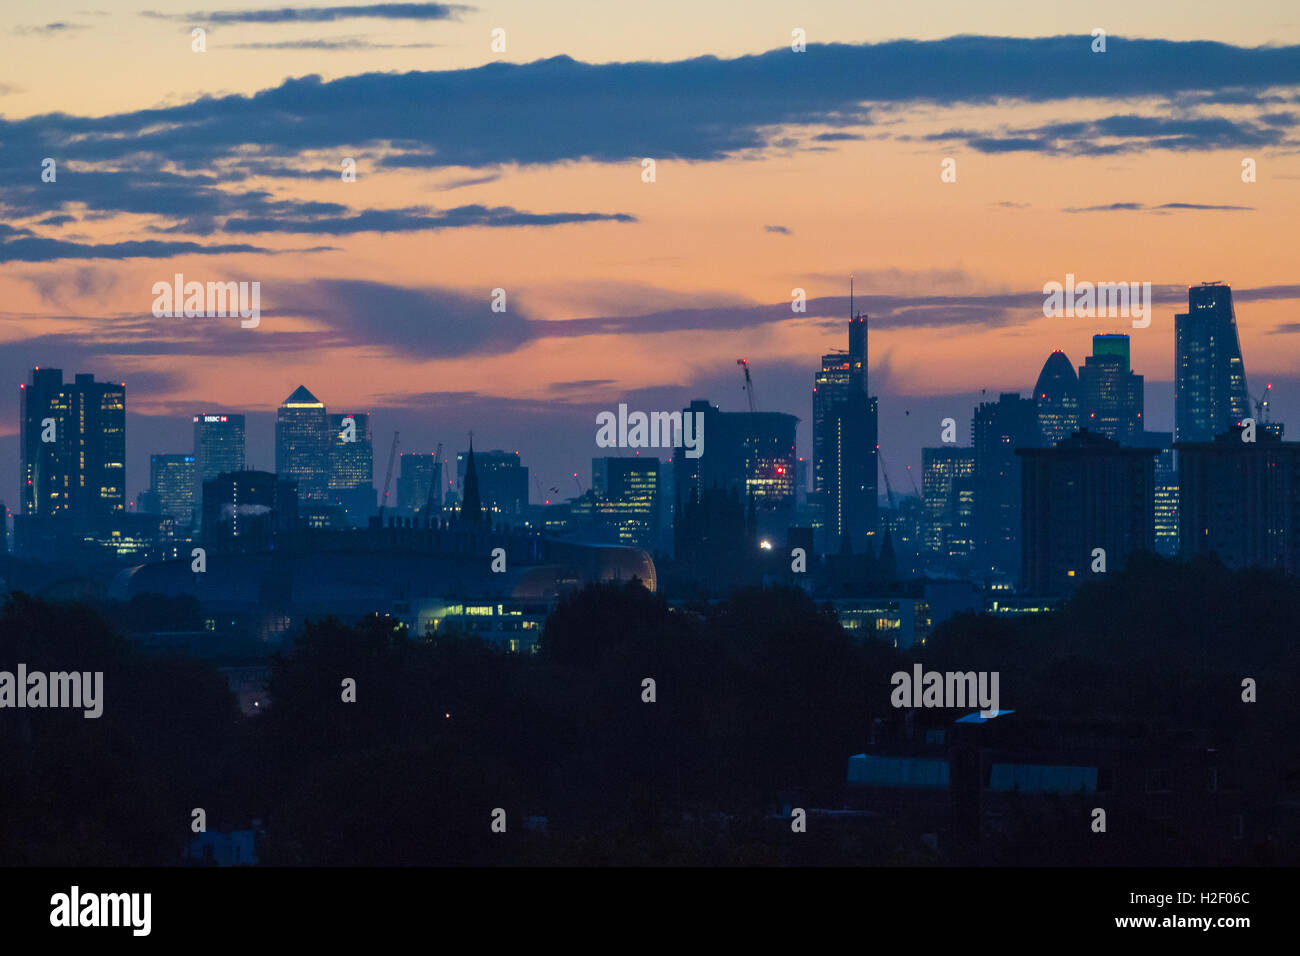 Primrose Hill, Londres, le 28 octobre 2016. Météo France : tôt le matin la lumière crée des teintes douces comme l'aube sur Londres. Crédit : Paul Davey/Alamy Live News Banque D'Images